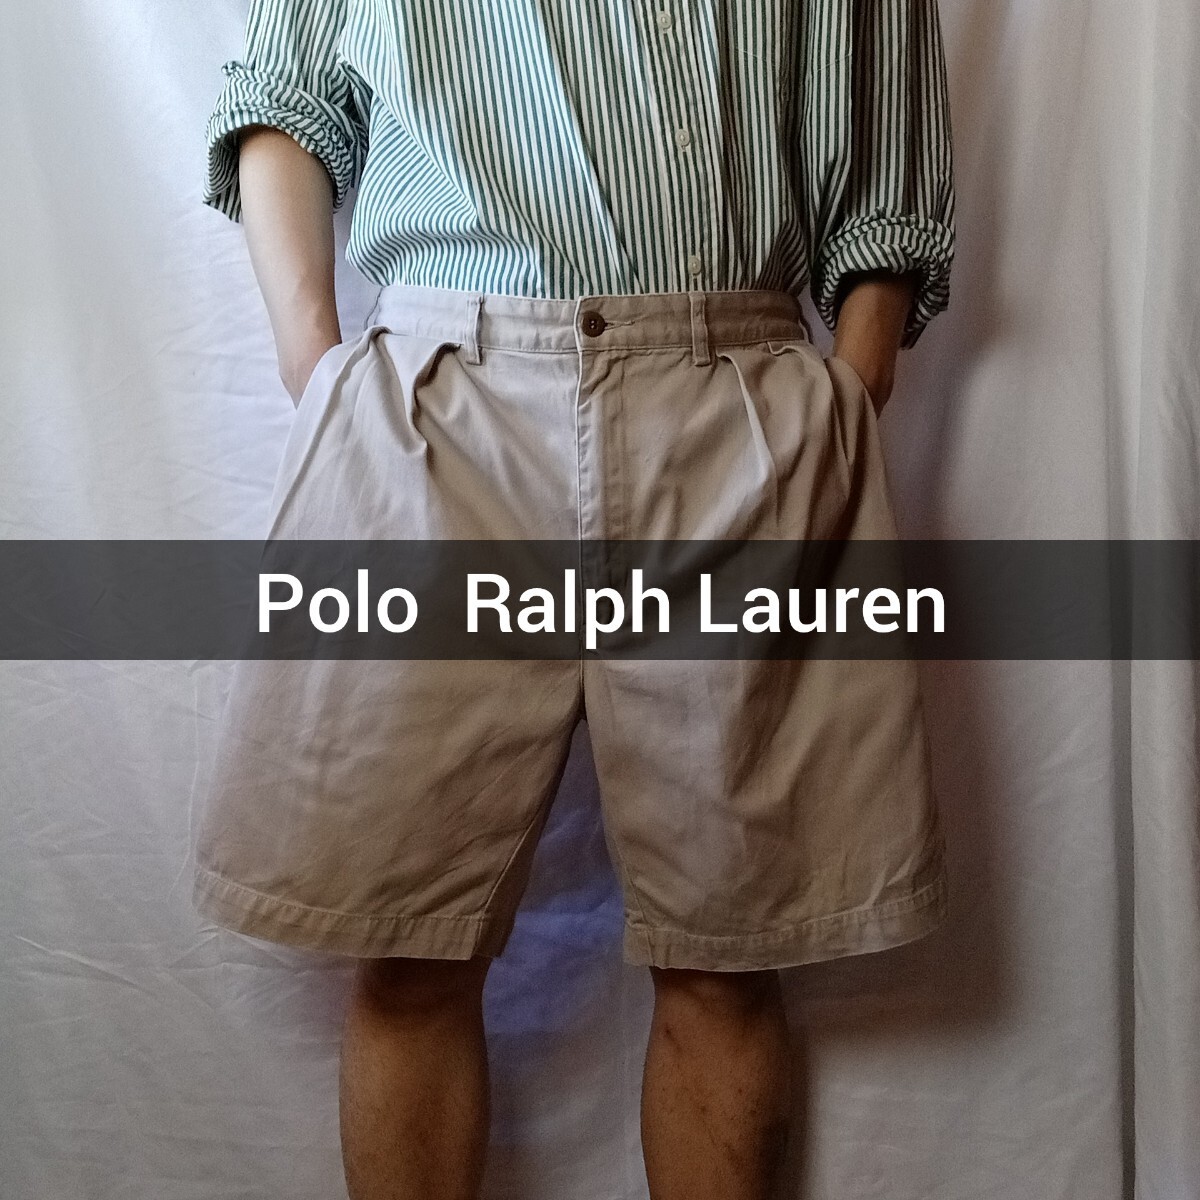 Polo Ralph Lauren ショートパンツ 36 チノパン ベージュ コットンパンツ ラルフローレン ショーツ ポロチノ 2タック アメカジ 古着 7_画像1